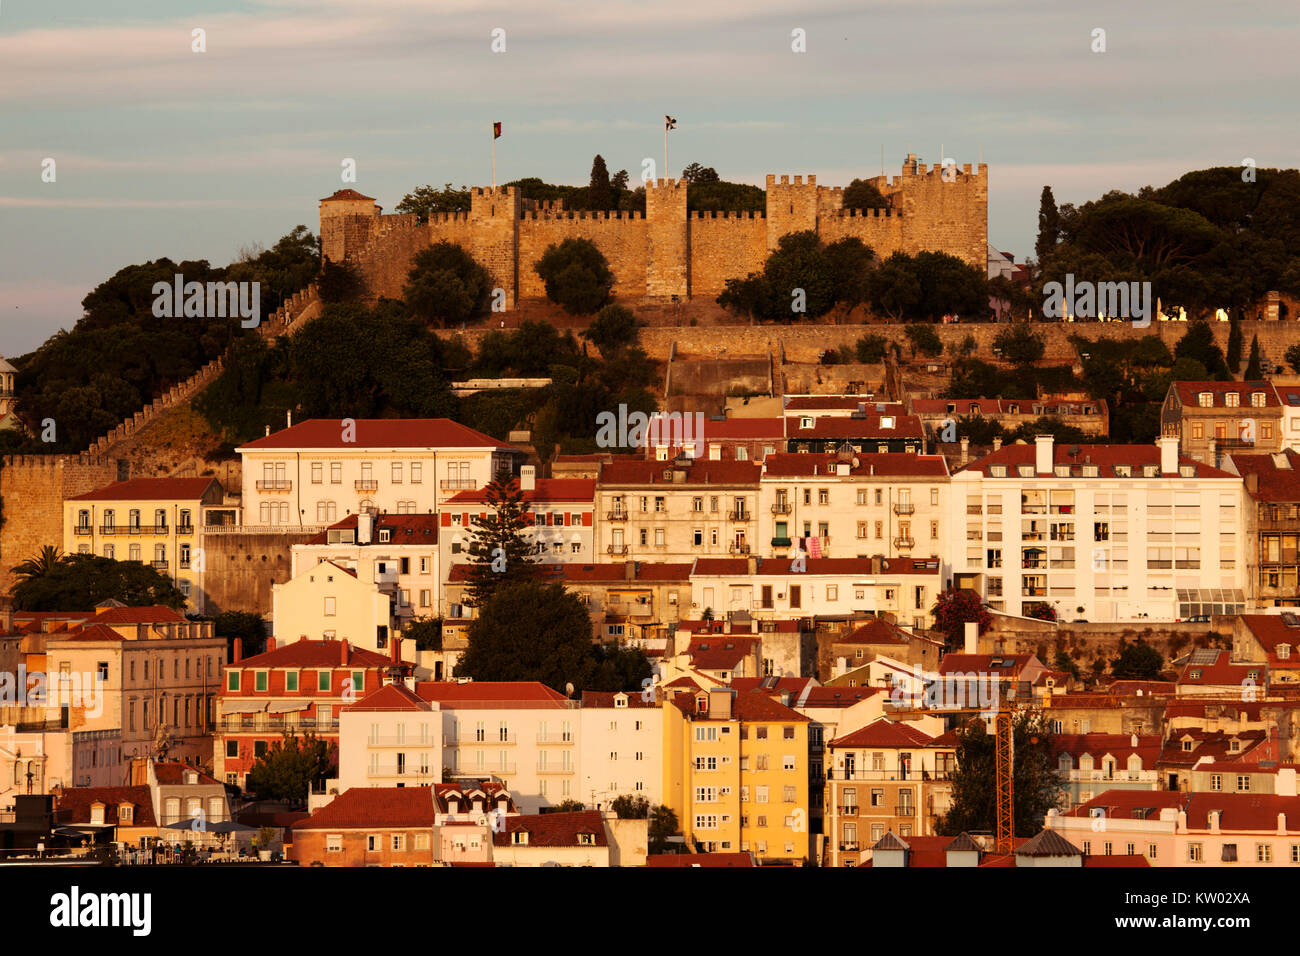 Die Burg von St George (Castelo de São Jorge) in Lissabon, Portugal. Die hilltop Festung stammt aus dem Mittelalter. Stockfoto